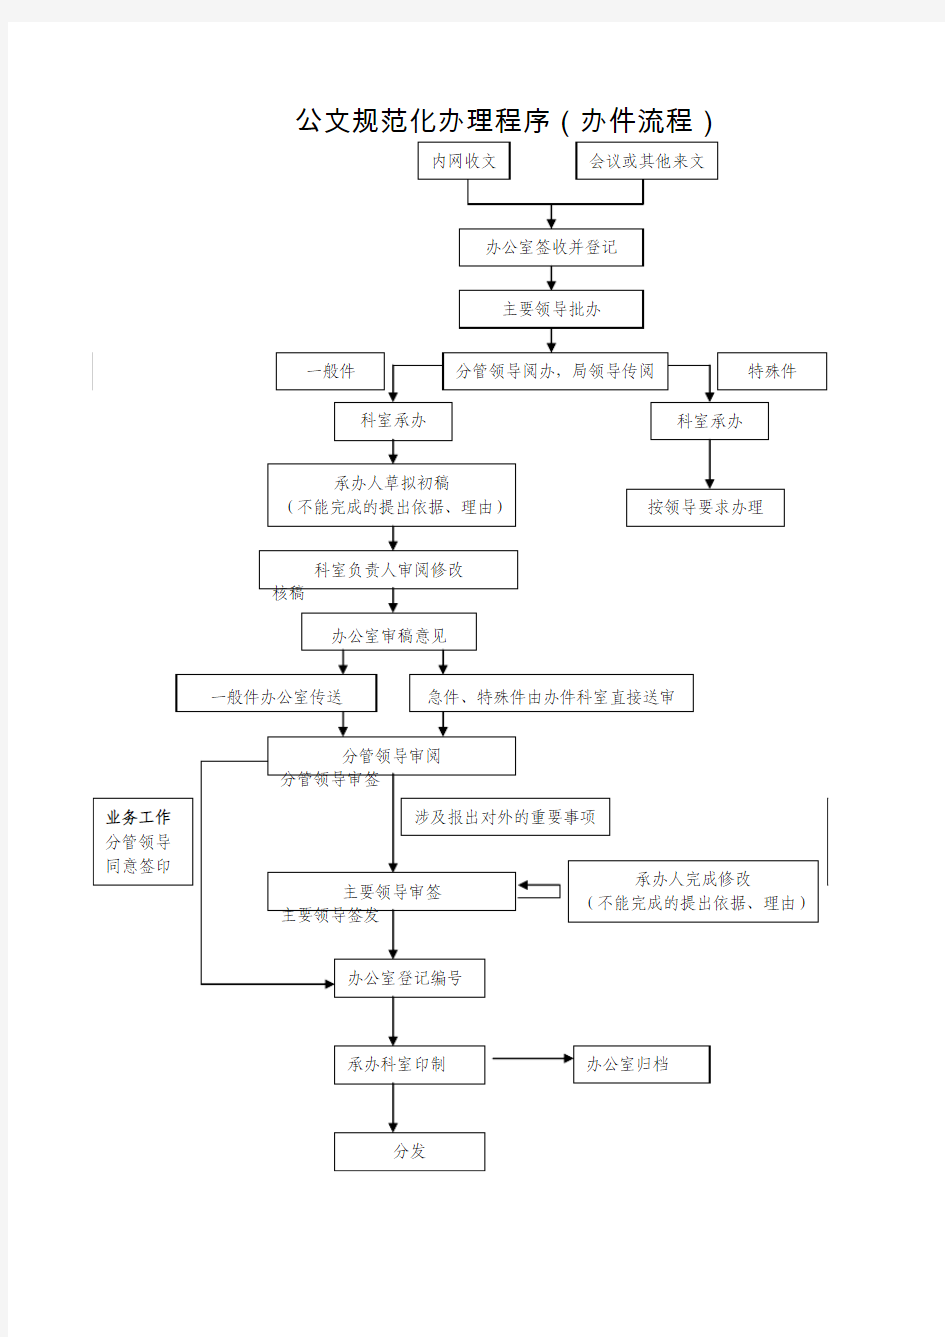 公文规范化办理程序(收发文流程图)